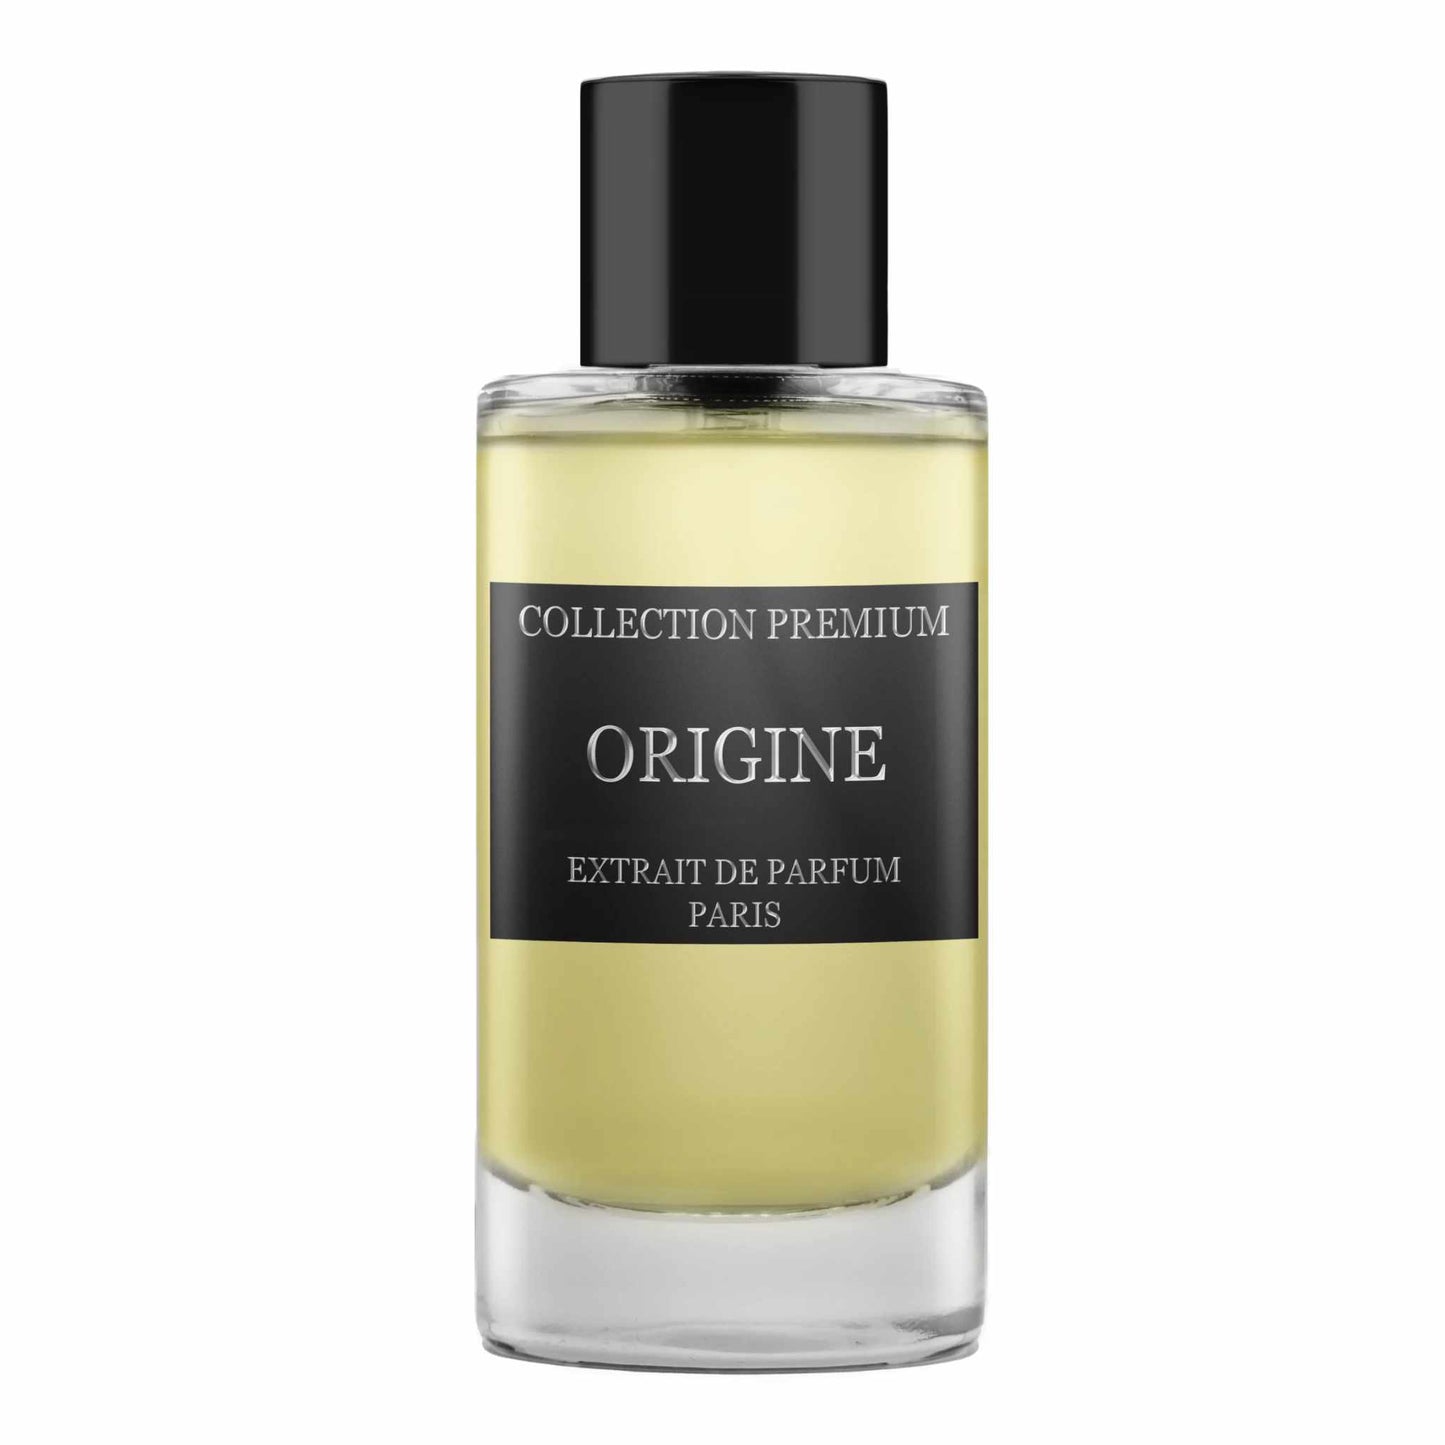 Collection Premium Origine Extrait de Parfum - 50 ml